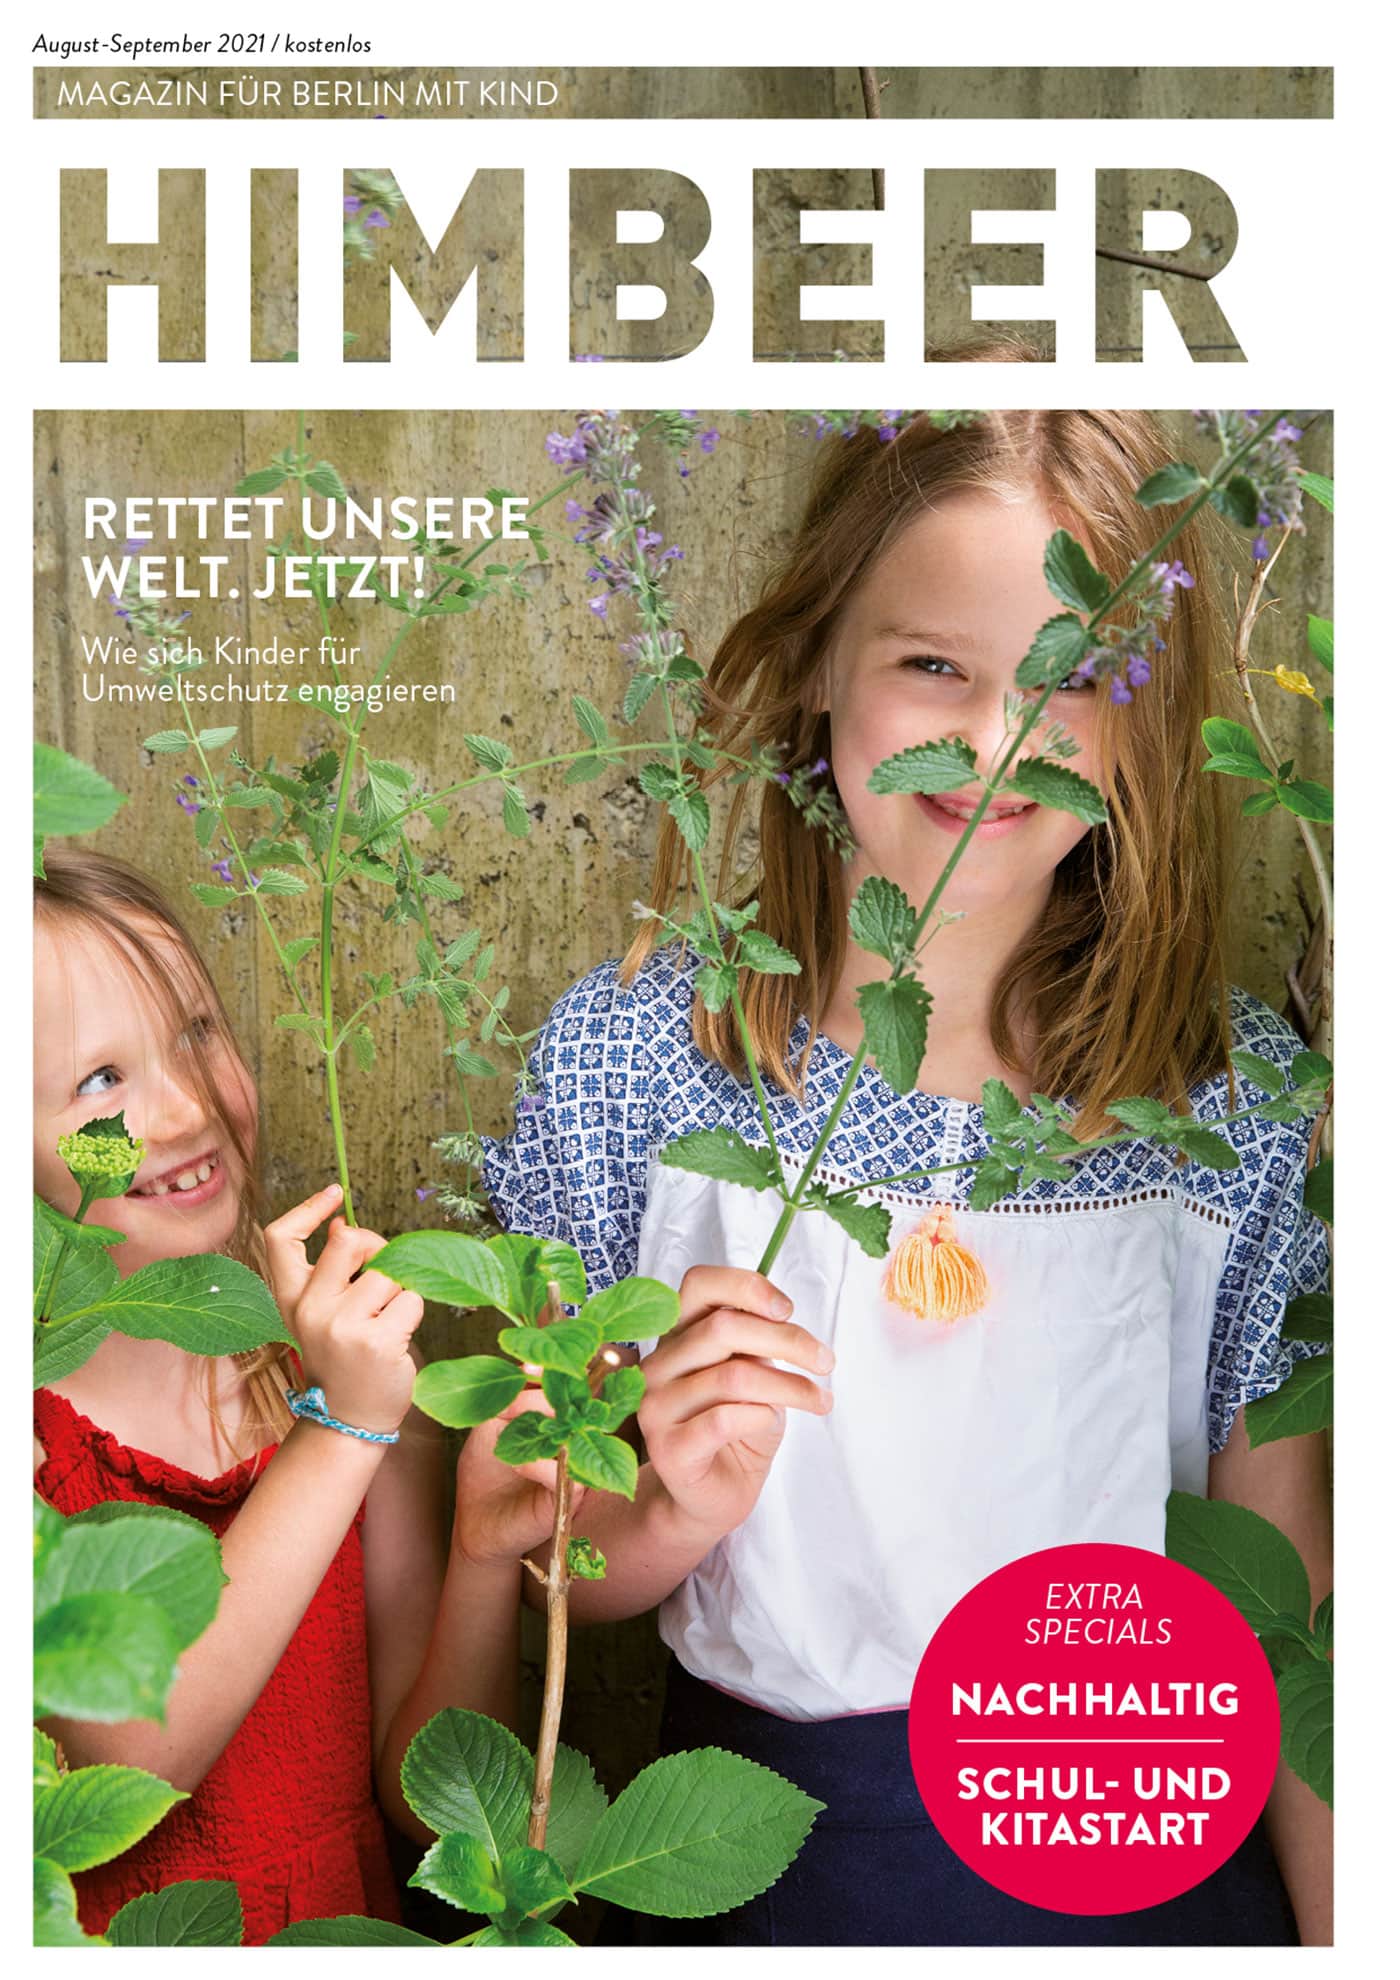 Himbeer Magazin Für Berlin Mit Kinder, Ausgabe August-September 2021 // Himbeer